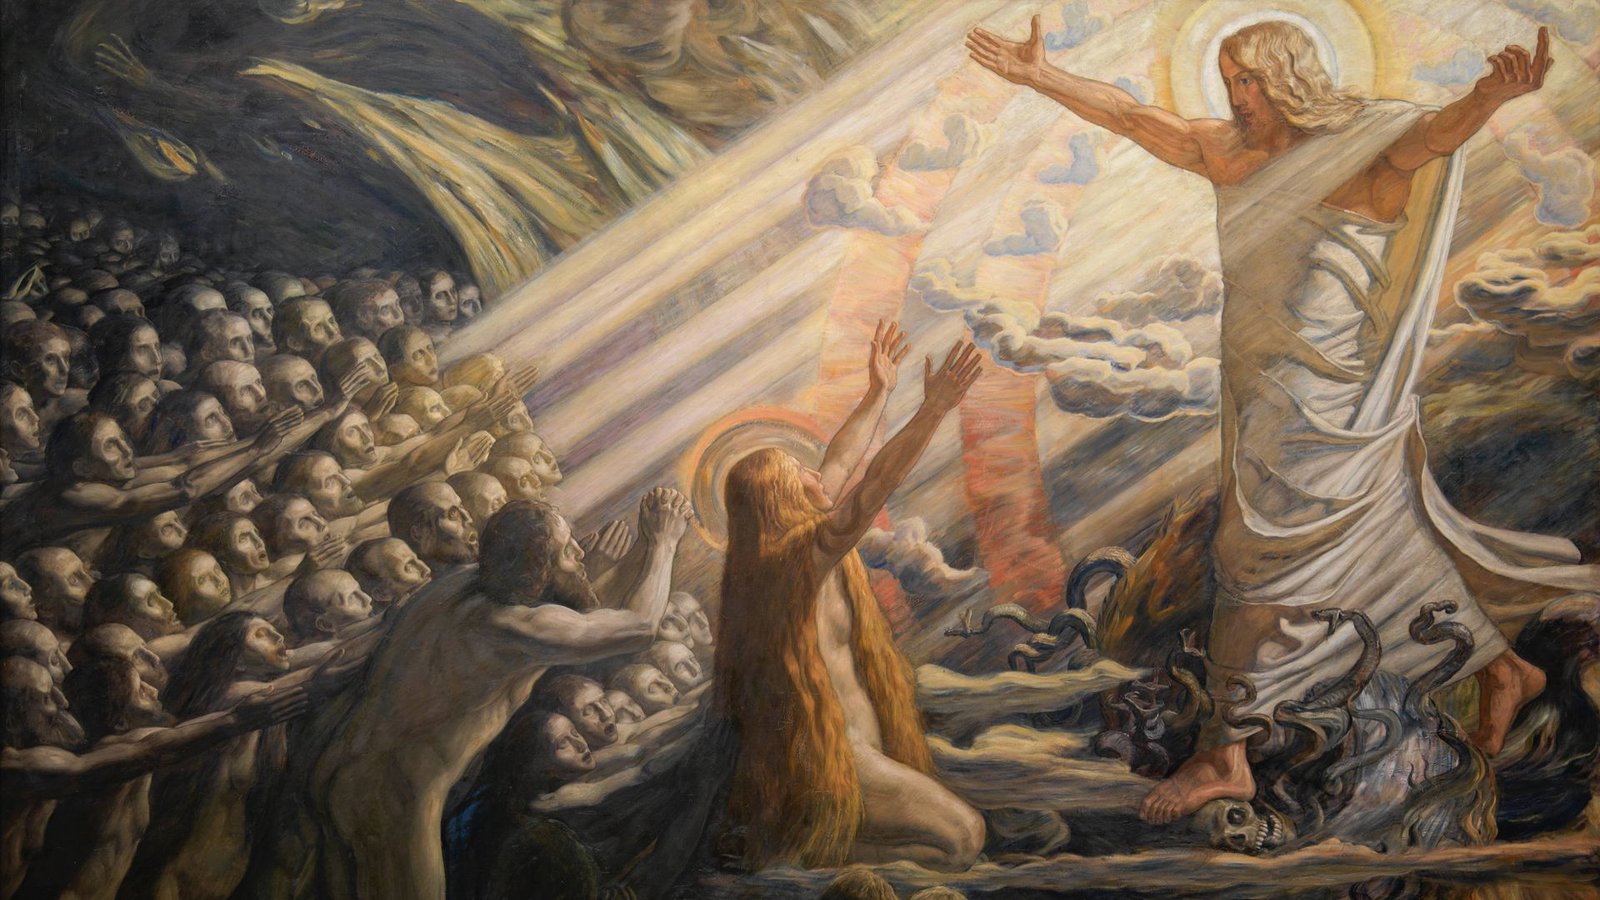 Christus predigt zu den Toten: Gemälde von JoakimSkovgaard (1856-1933).Foto: Imago/Heritage Images